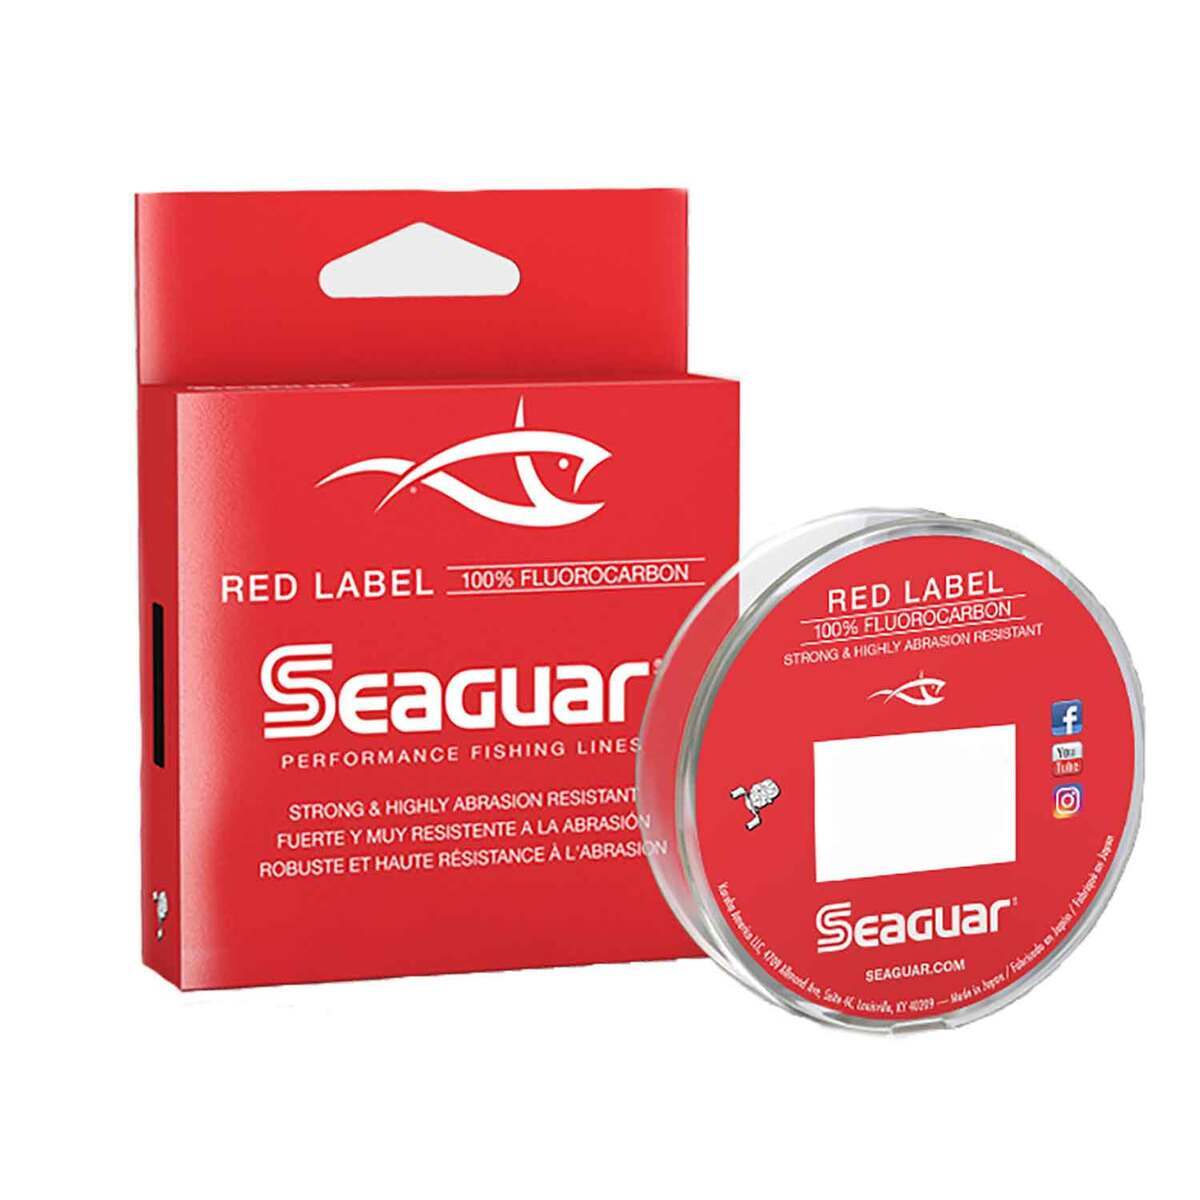 Seaguar Red Label Fluorocarbon Line 4 lb.